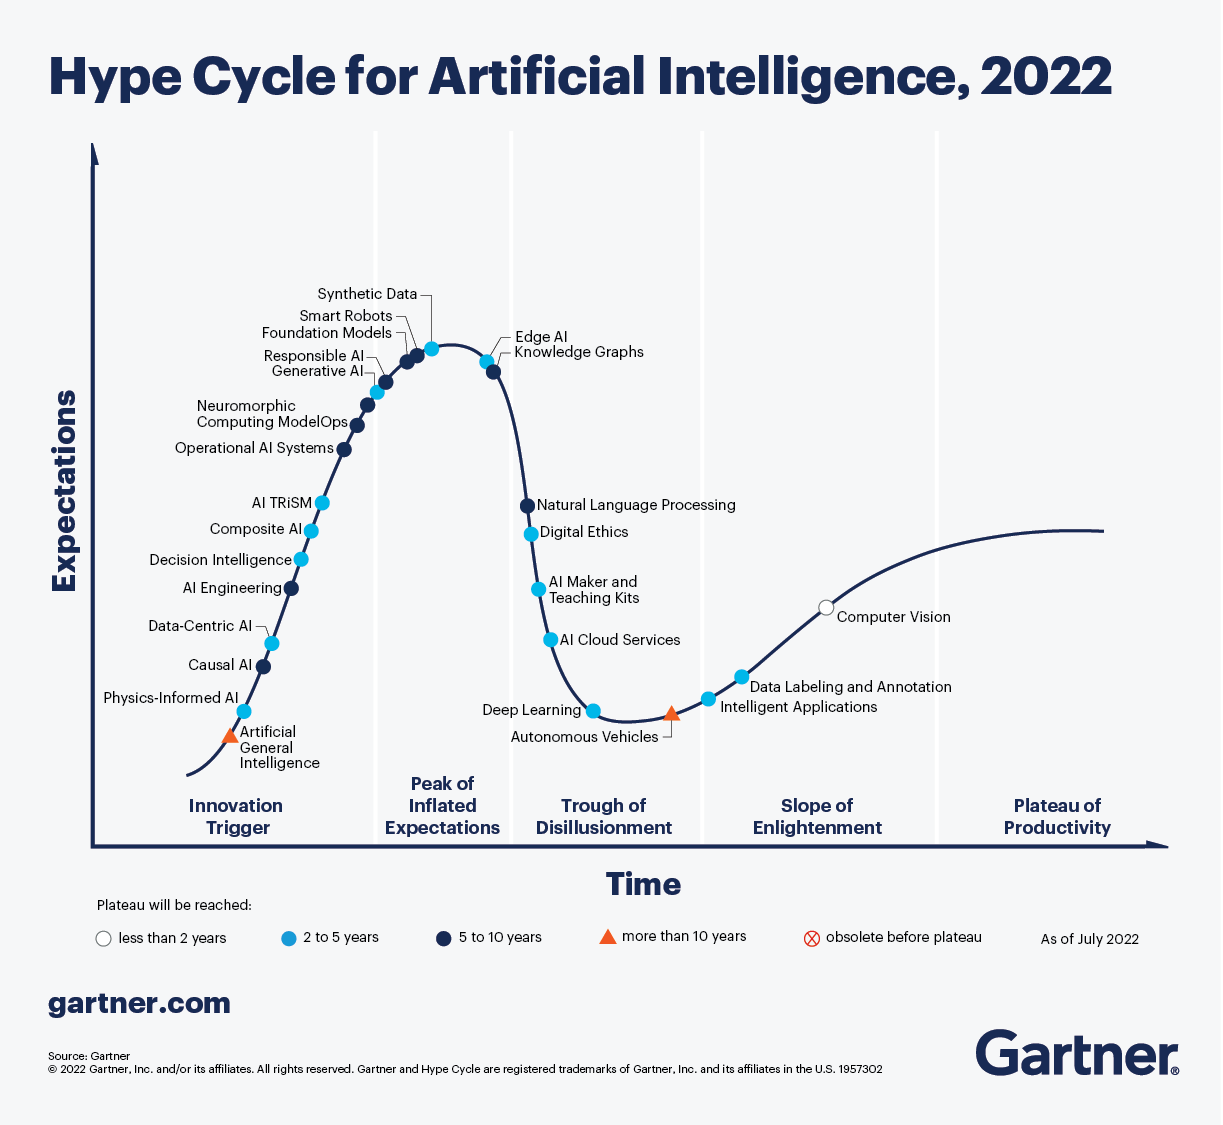 Gartner的炒作周期图显示了各种AI实现在成熟度、采用率和特定技术的社会应用方面的情况。生成AI已经进入了过度期的顶峰。